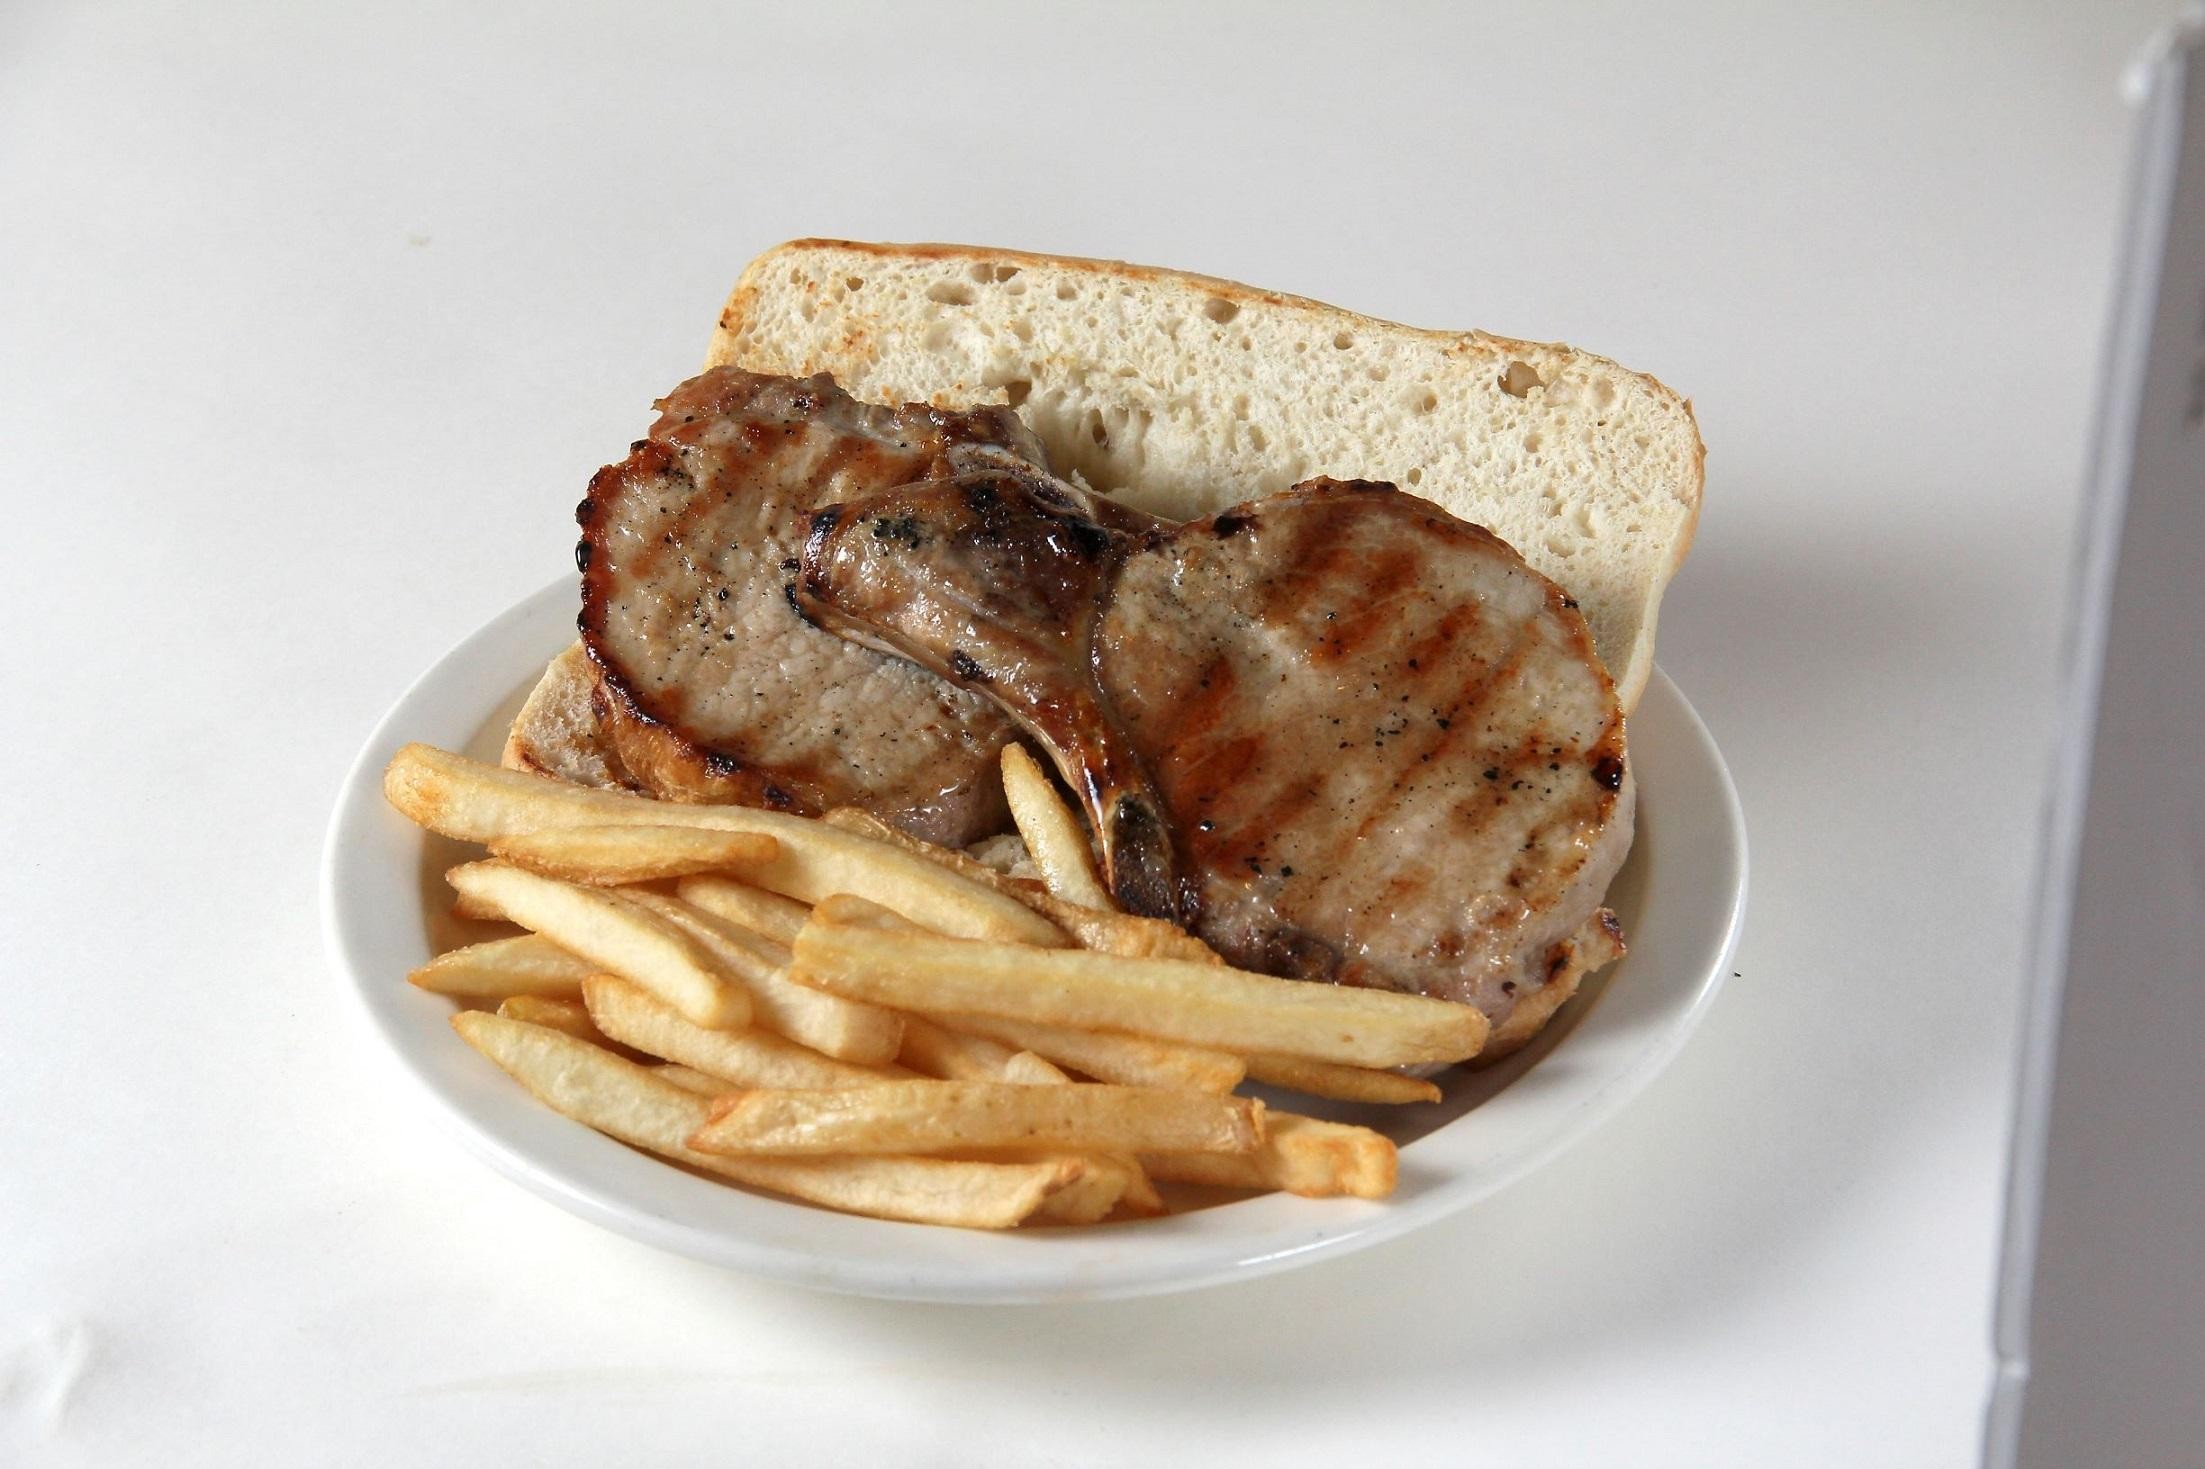 Two Pork Chop Sandwich on French Bread